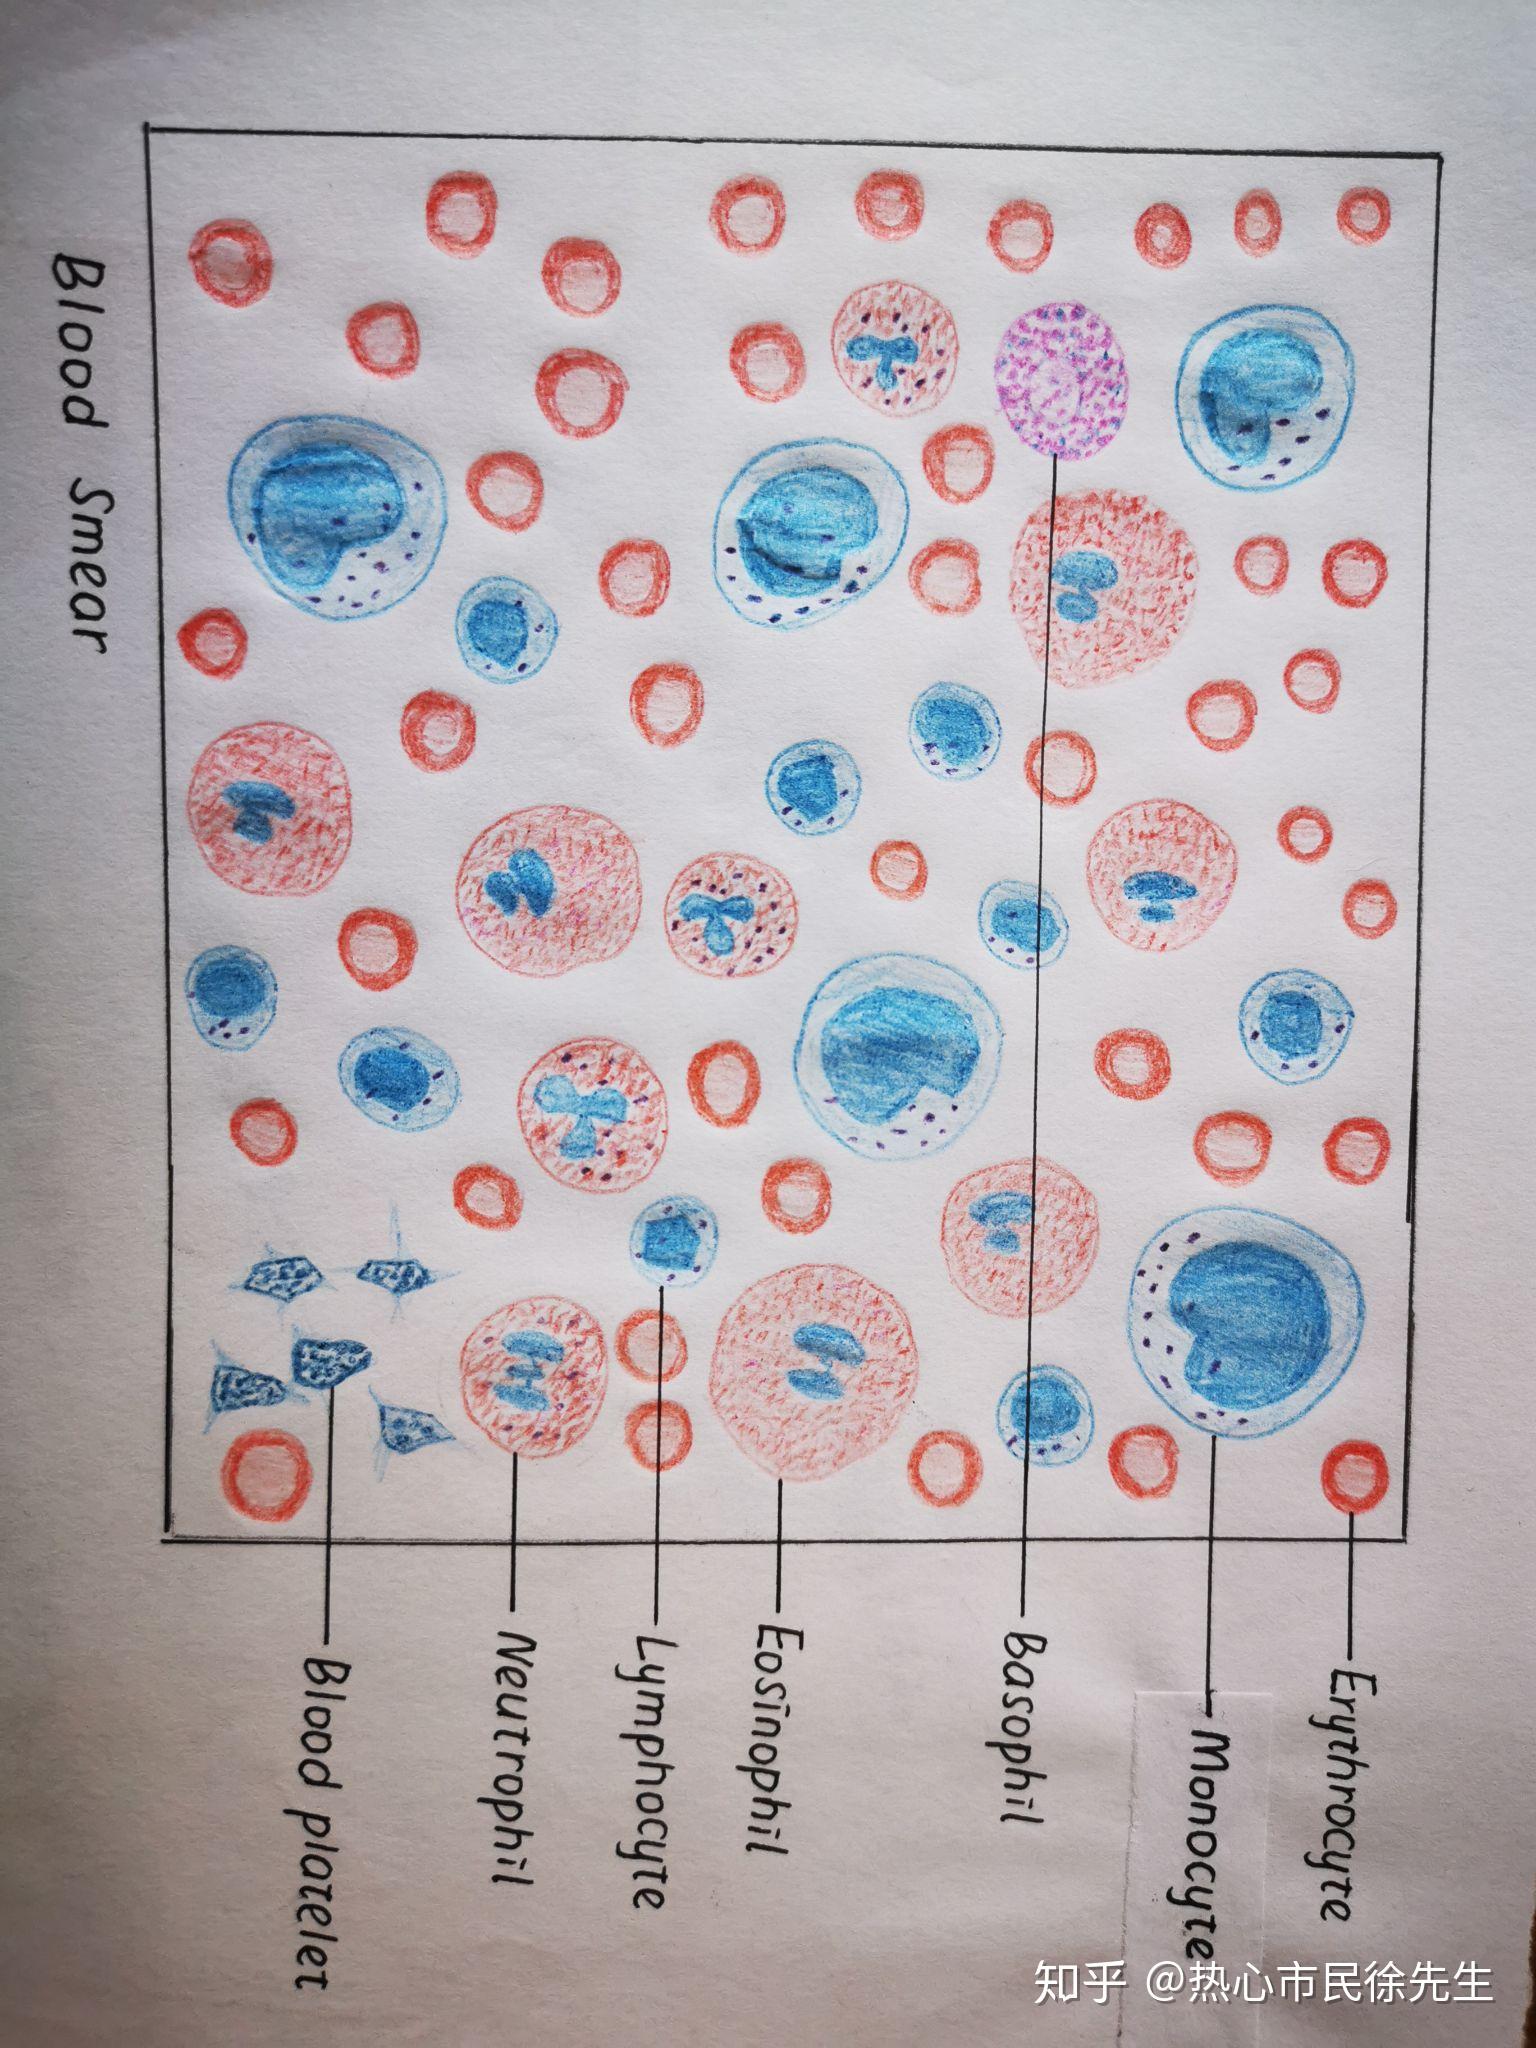 组胚红蓝铅笔手绘图知识点总结按需自取